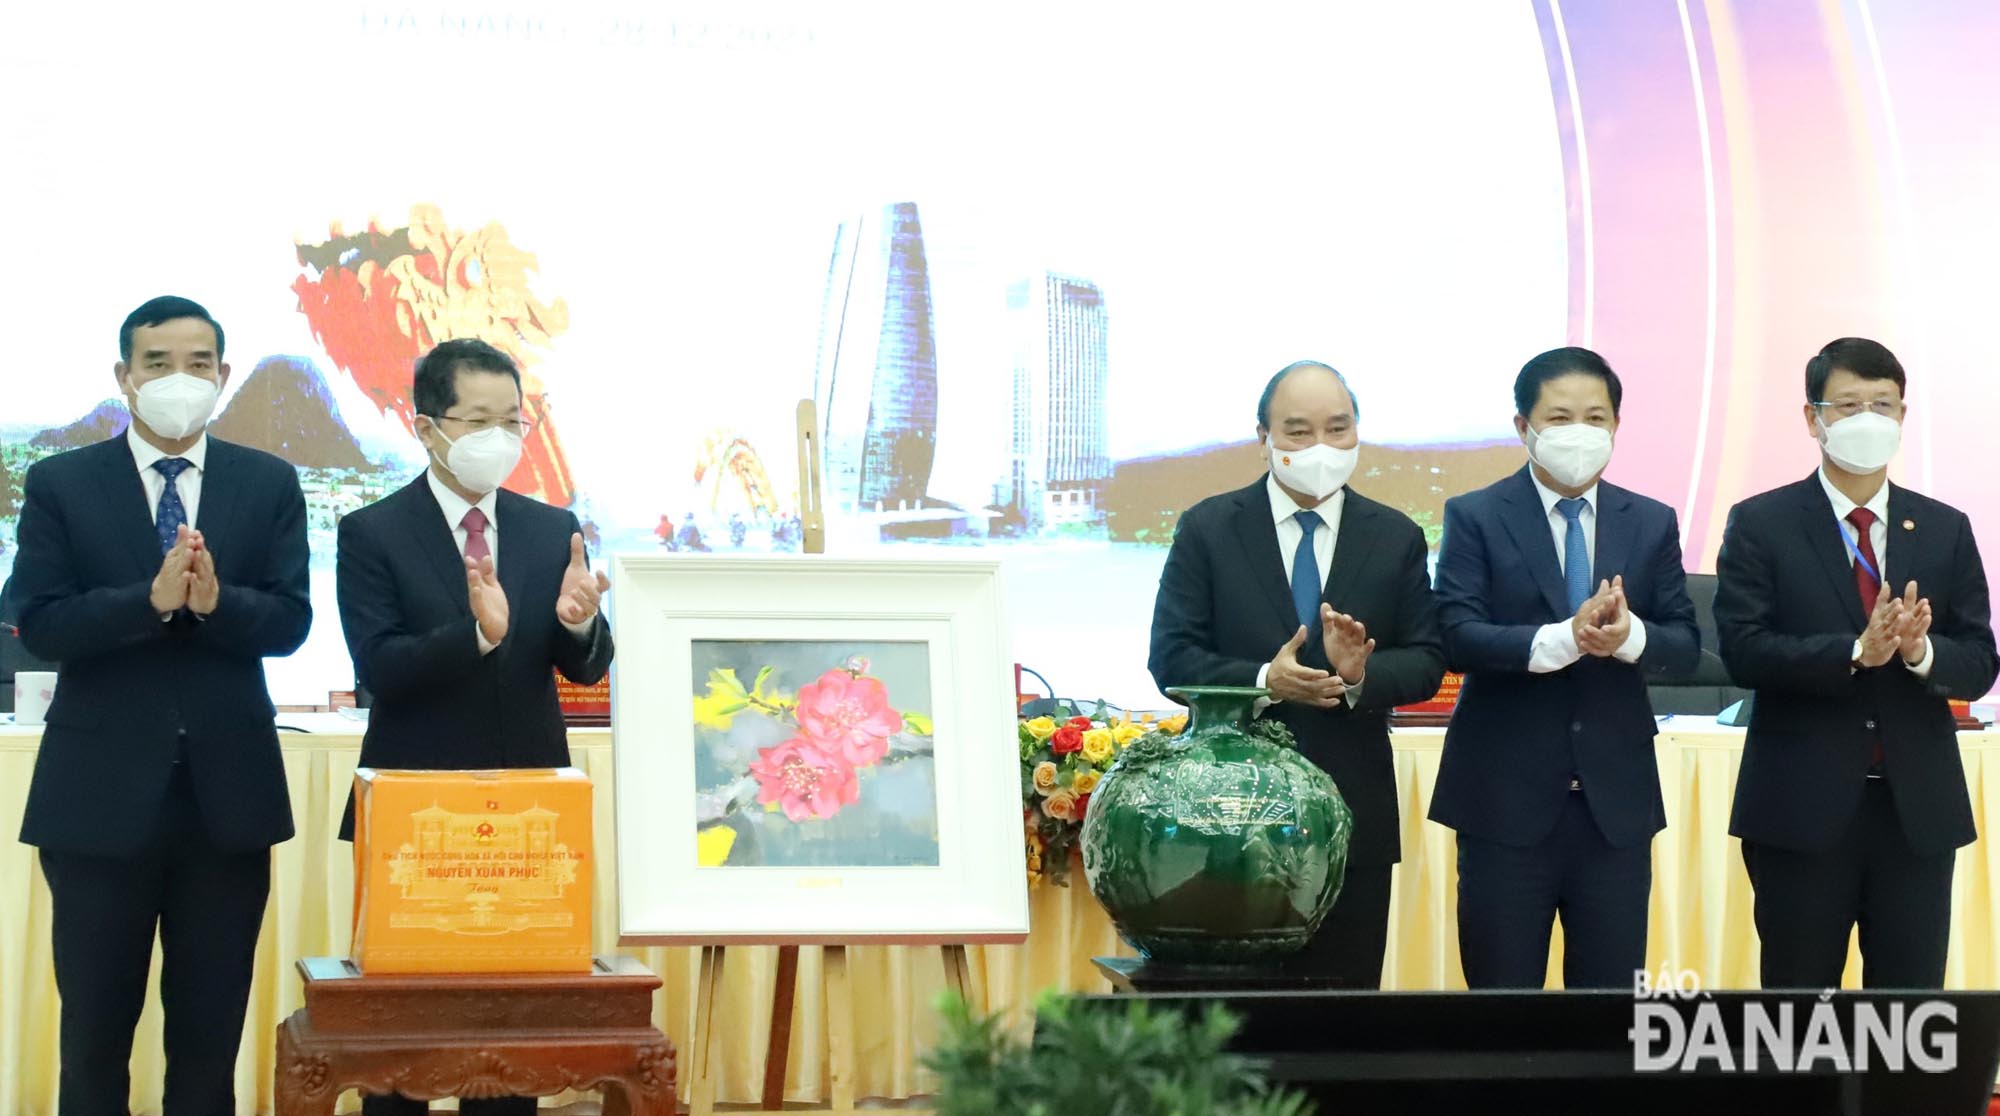 Chủ tịch nước Nguyễn Xuân Phúc tặng quà lưu niệm cho lãnh đạo thành phố Đà Nẵng. Ảnh: NGỌC PHÚ